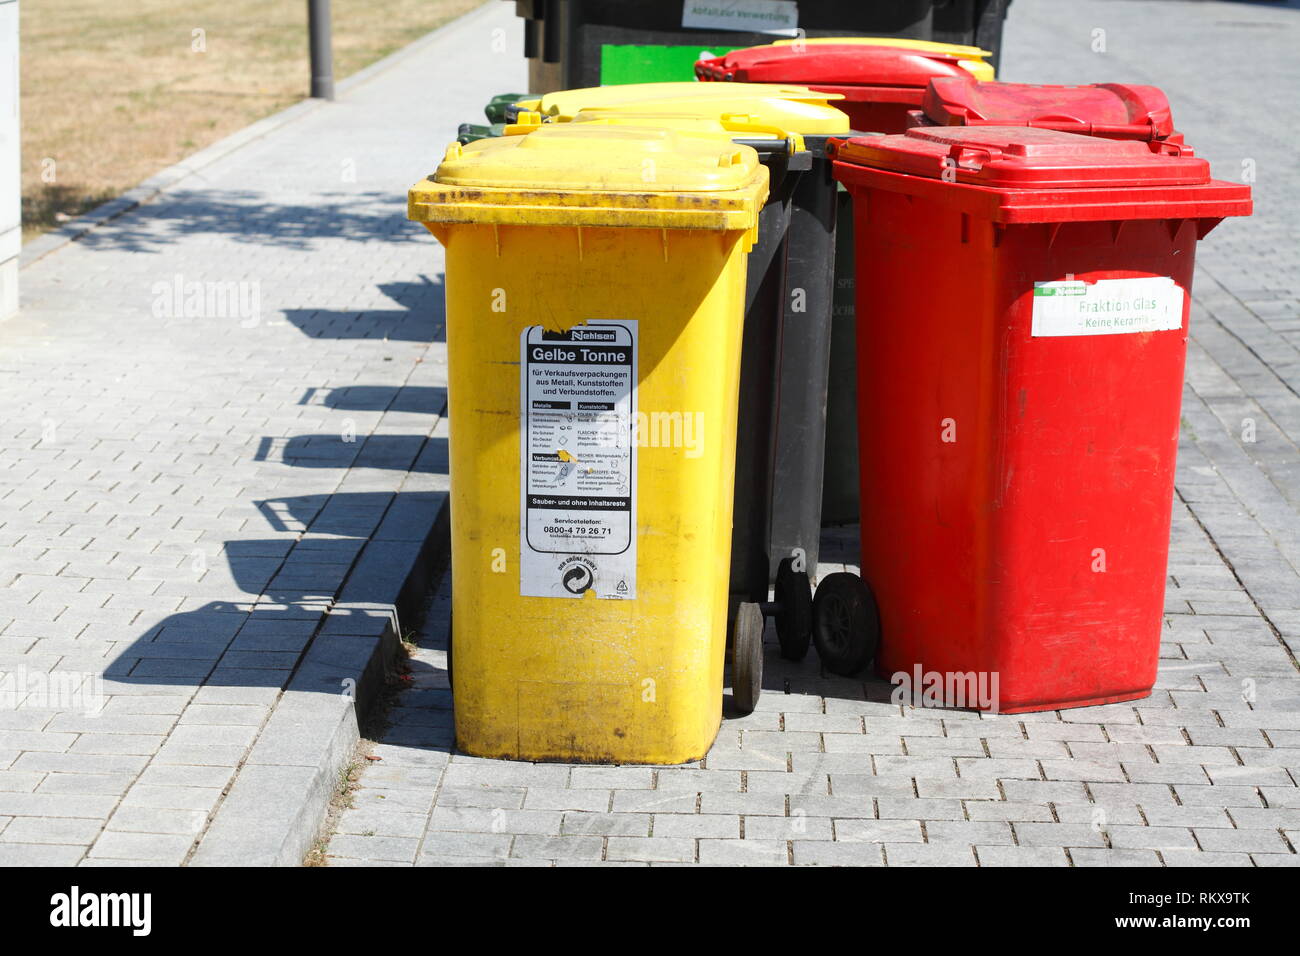 Bunte Mülltonnen, gelbe Tonne für plastik Müll, rote Tonne für Glas Müll,  Deutschland, Europa ich Bunte Mülltonnen, Gelbe Tonne für Plastikmüll, Ro  Stockfotografie - Alamy